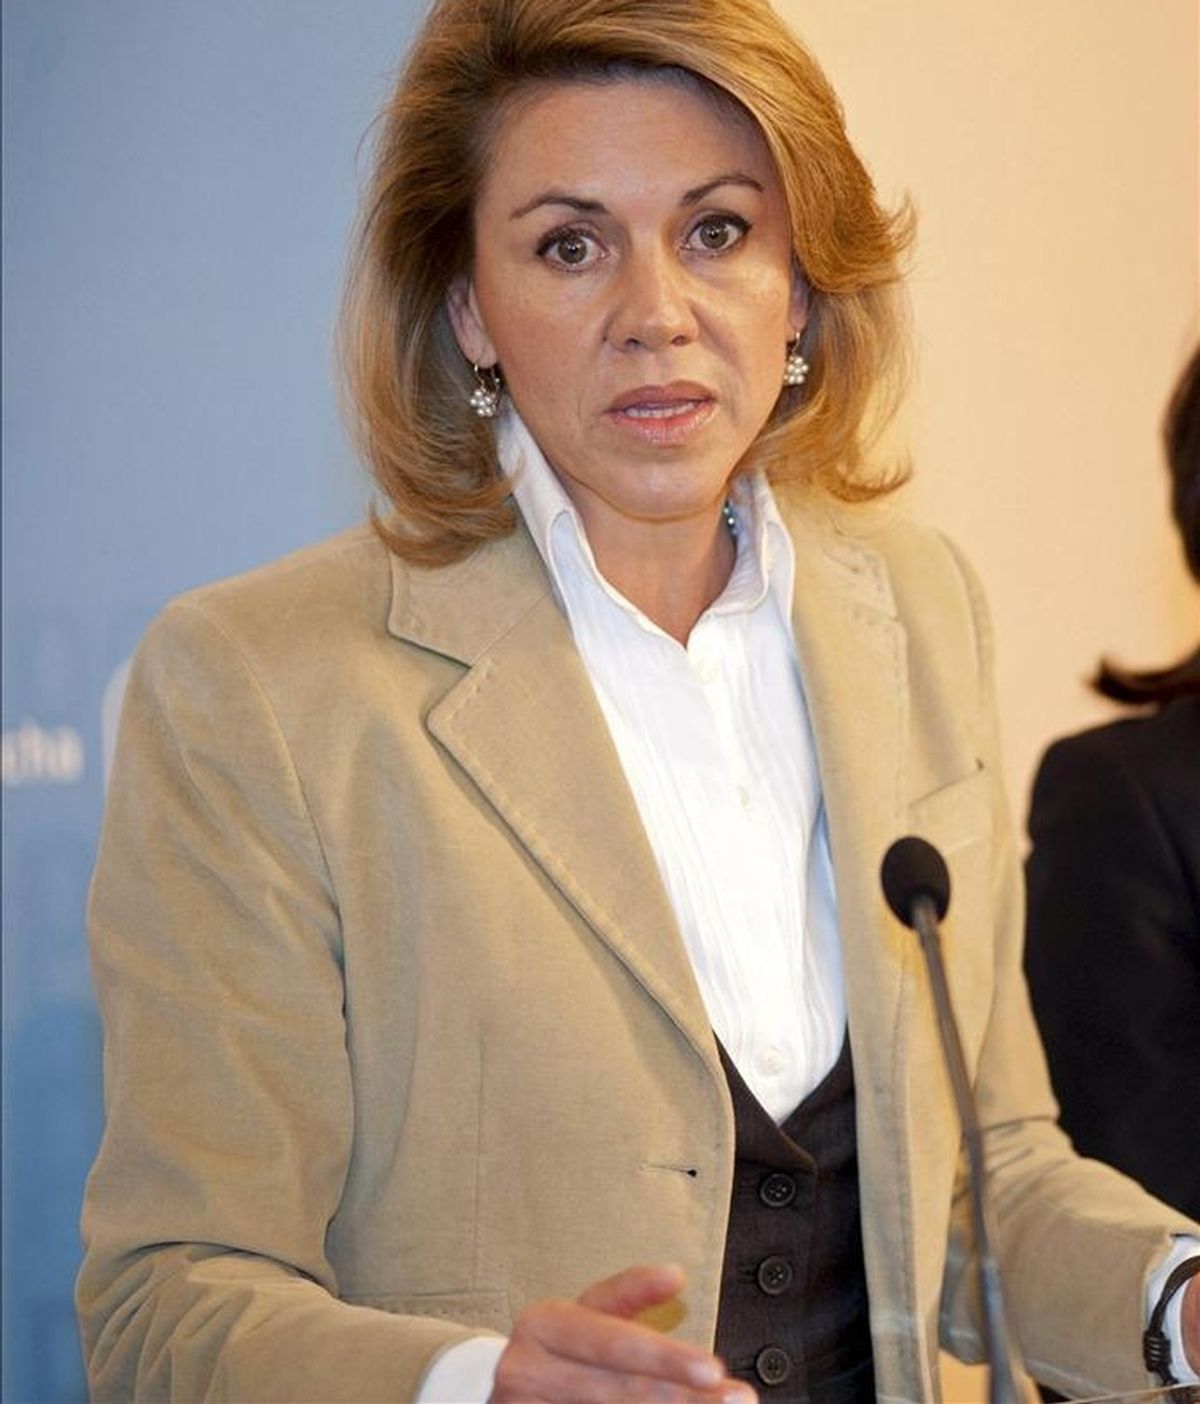 En la iamgen, la secretaria general del PP y candidata de los populares a la presidencia de Castilla-La Mancha, María Dolores Cospedal. EFE/Archivo